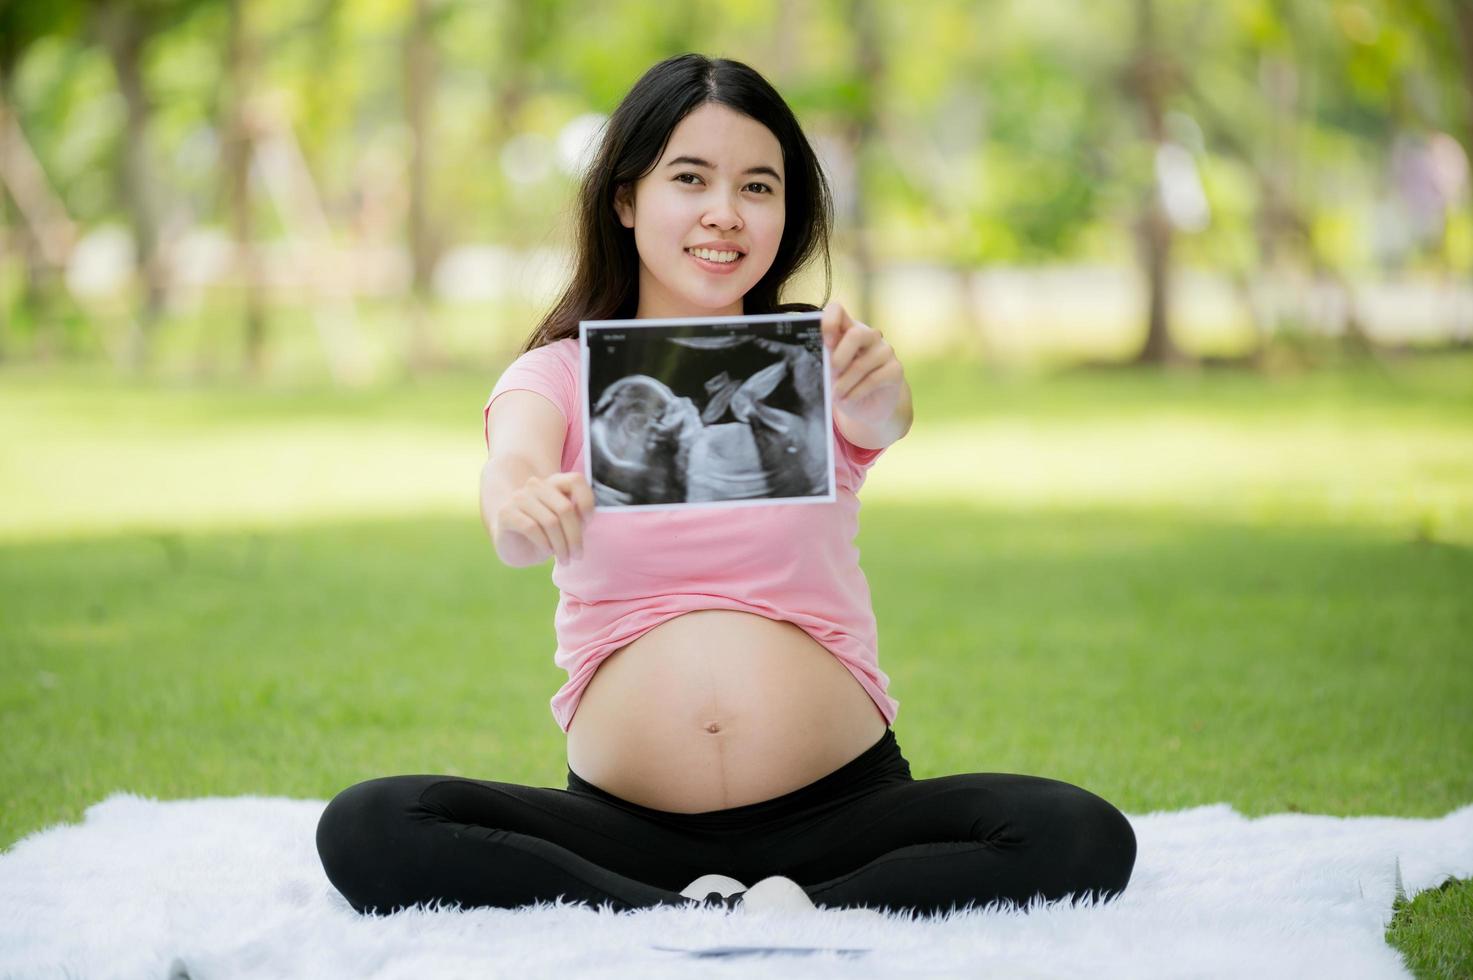 une femme asiatique enceinte pour la première fois s'assoit et se détend pour montrer ses images d'une échographie hospitalière pour vérifier la santé de son bébé en pleine croissance photo